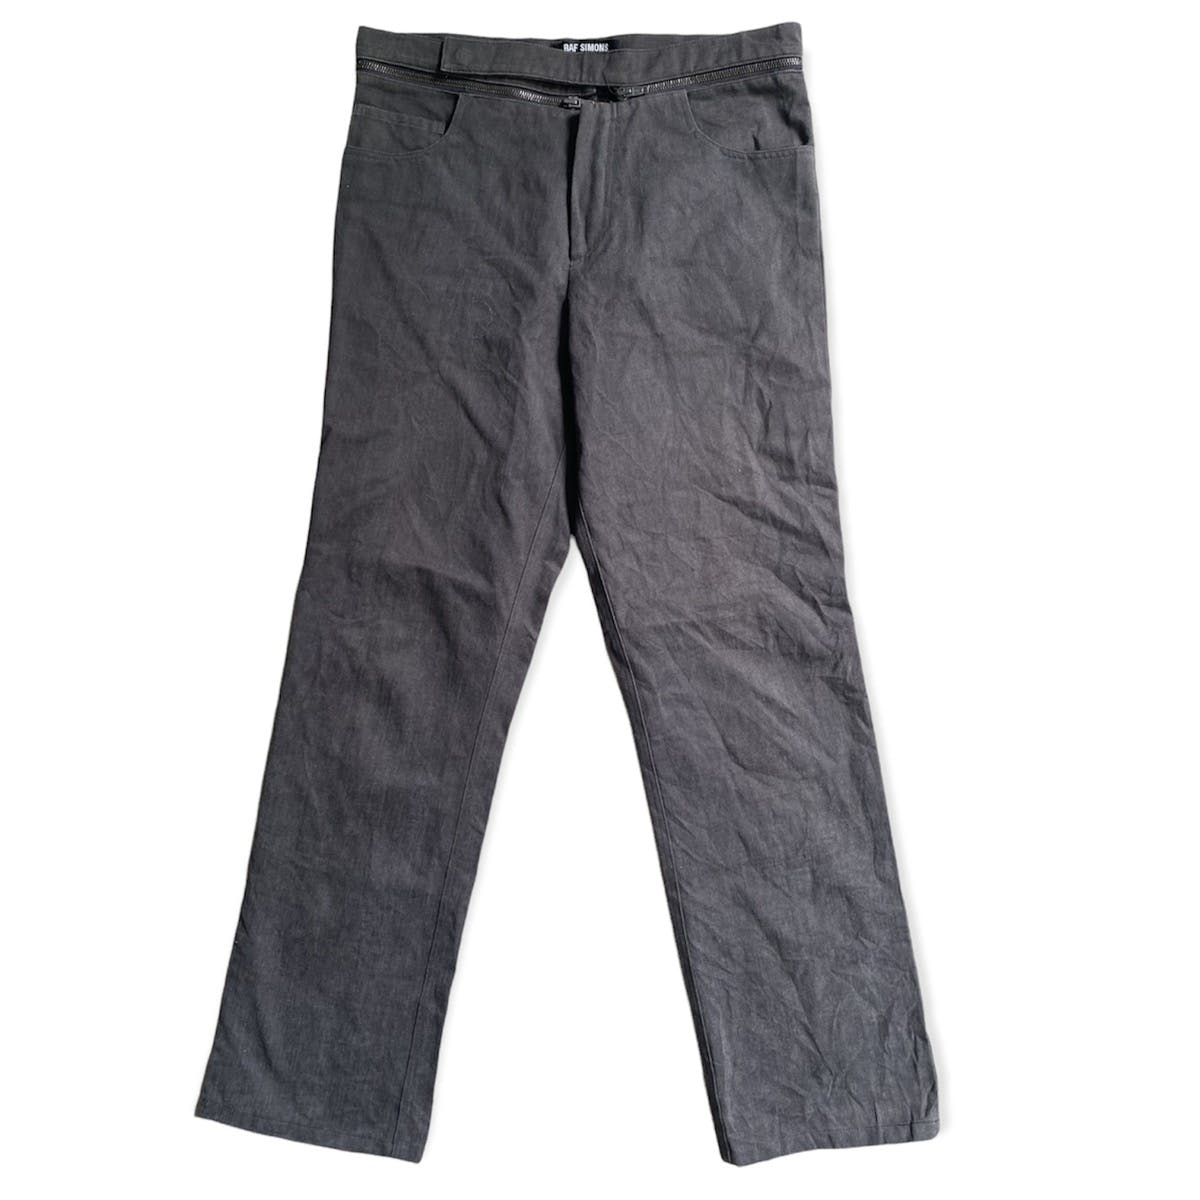 AW02-03 Waist Zip Deconstructed Pants - 2